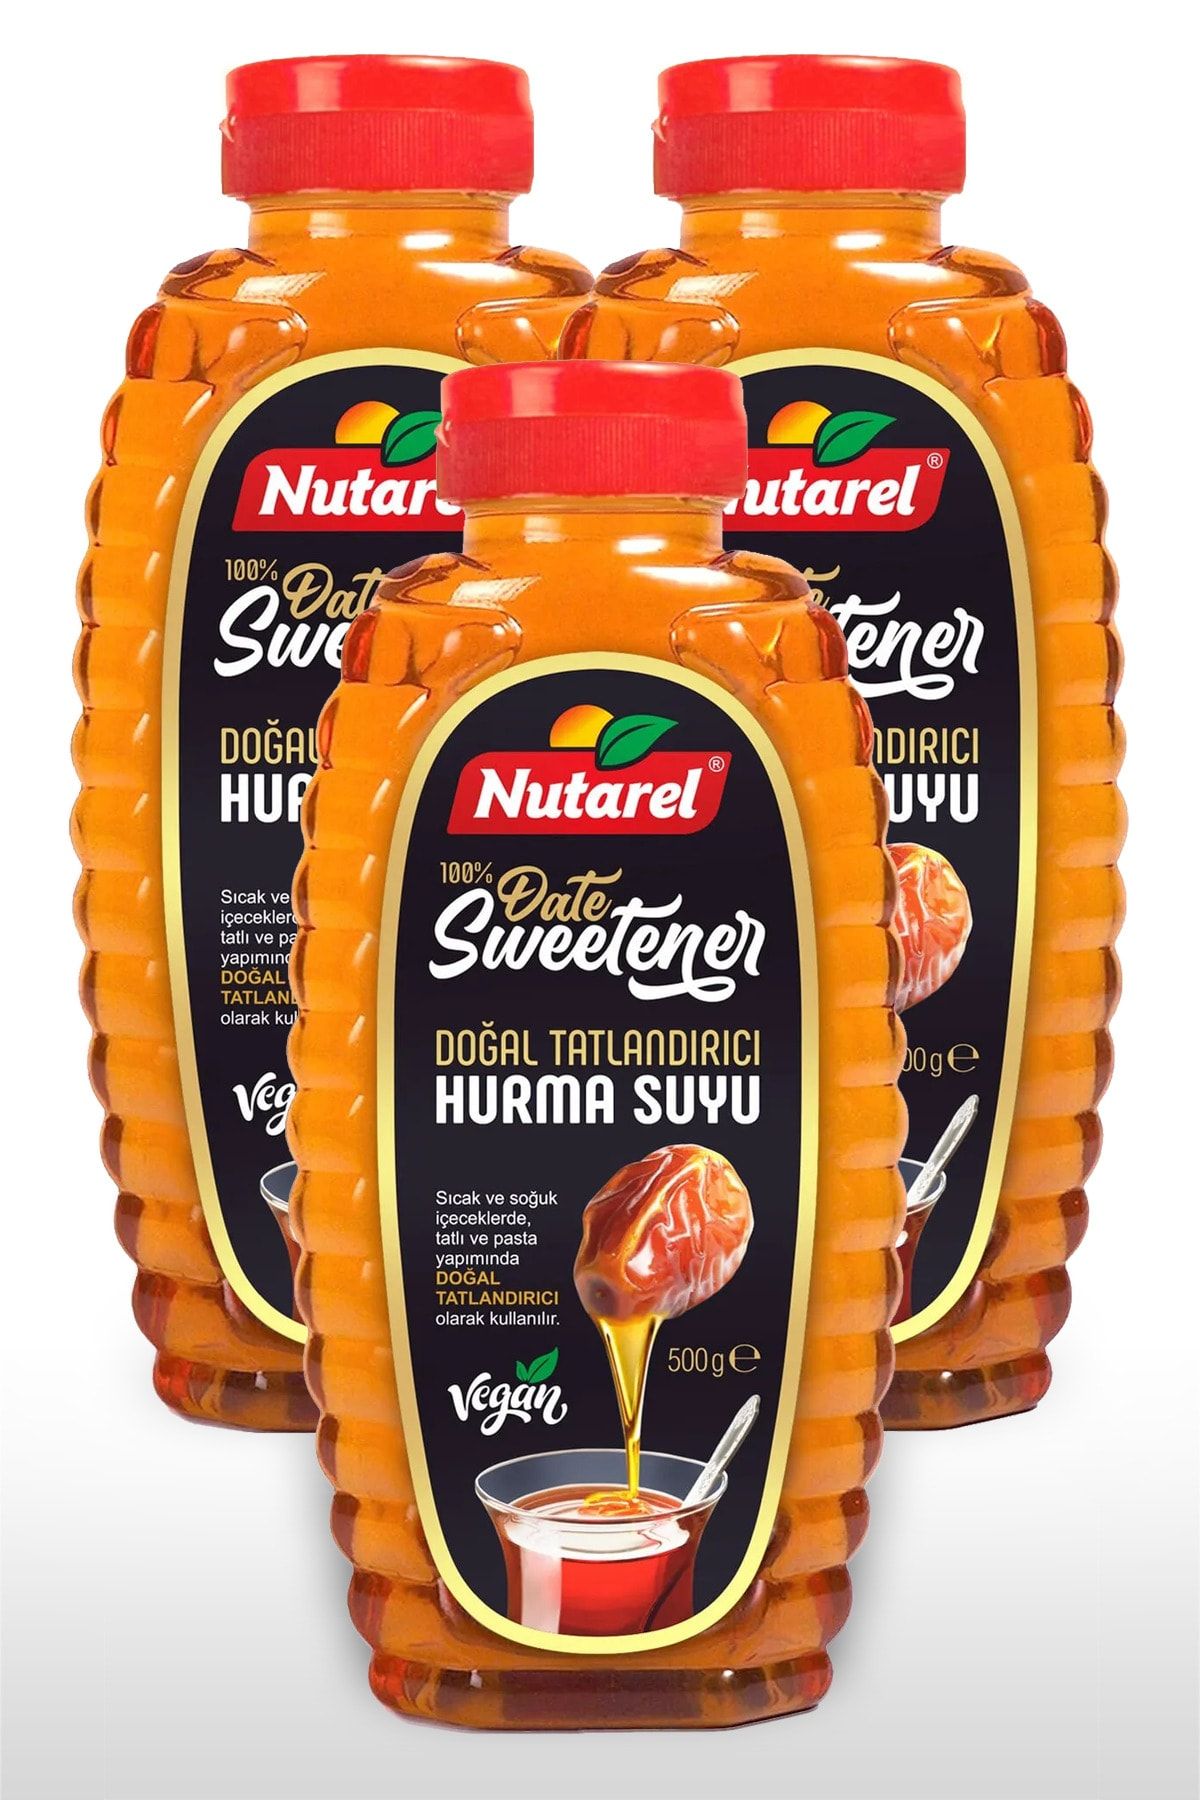 NUTAREL Hurma Suyu - %100 Date Sweetener 3 X 500 Gr.